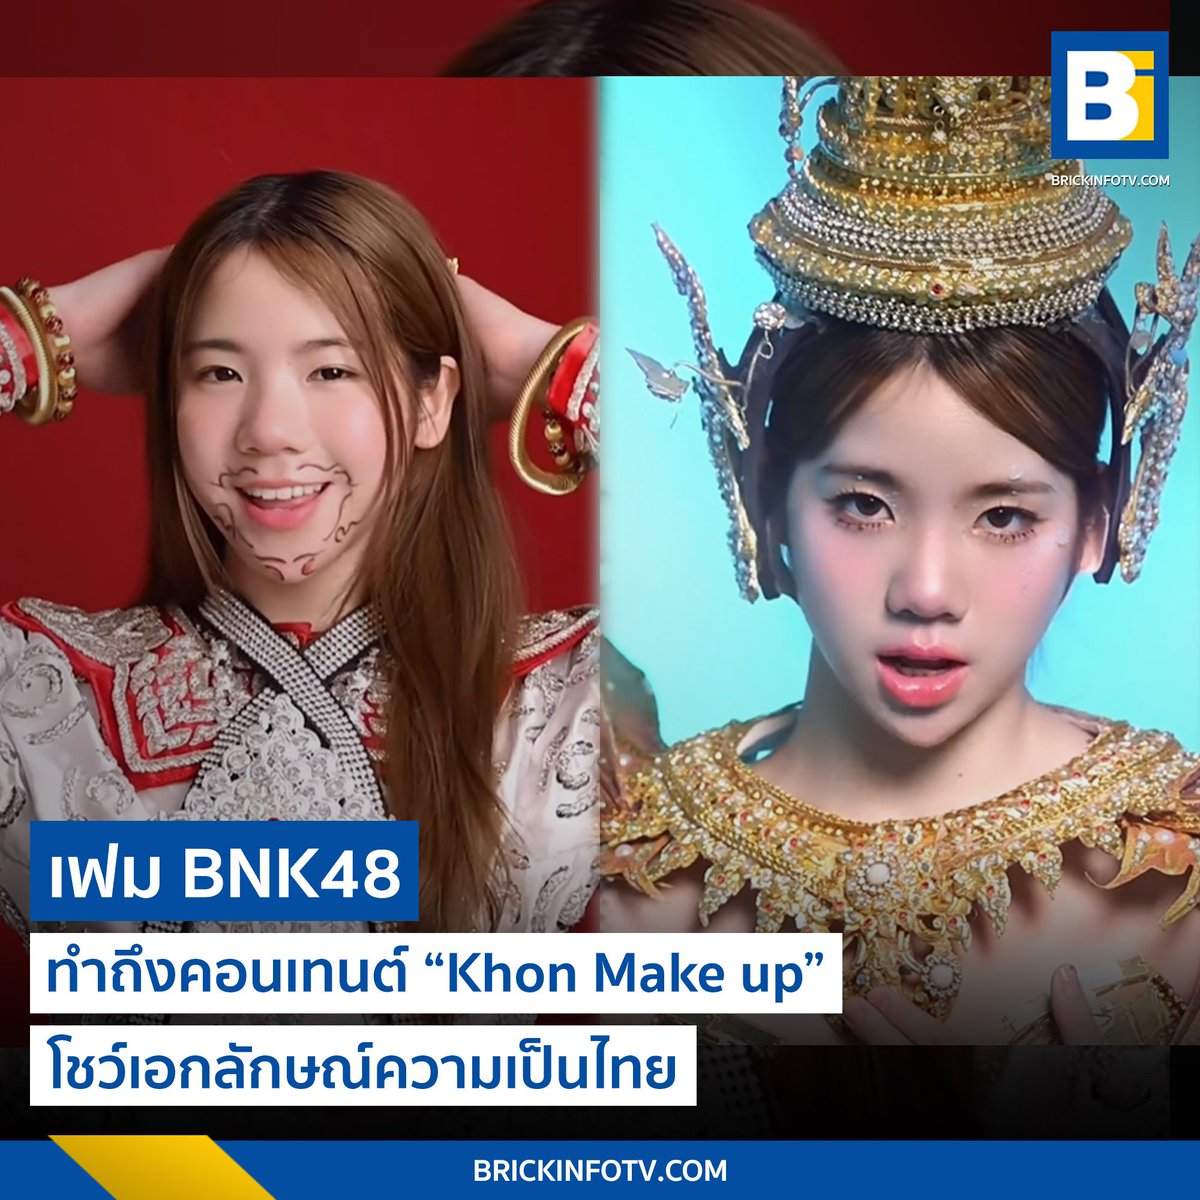 ทำถึง! “เฟม BNK48” ทำคอนเทนต์ “Khon Make up” โชว์เอกลักษณ์ความเป็นไทย
.
👉brickinfotv.com/idol-artist/23…
.
#fameBNK48 #Brickinfo